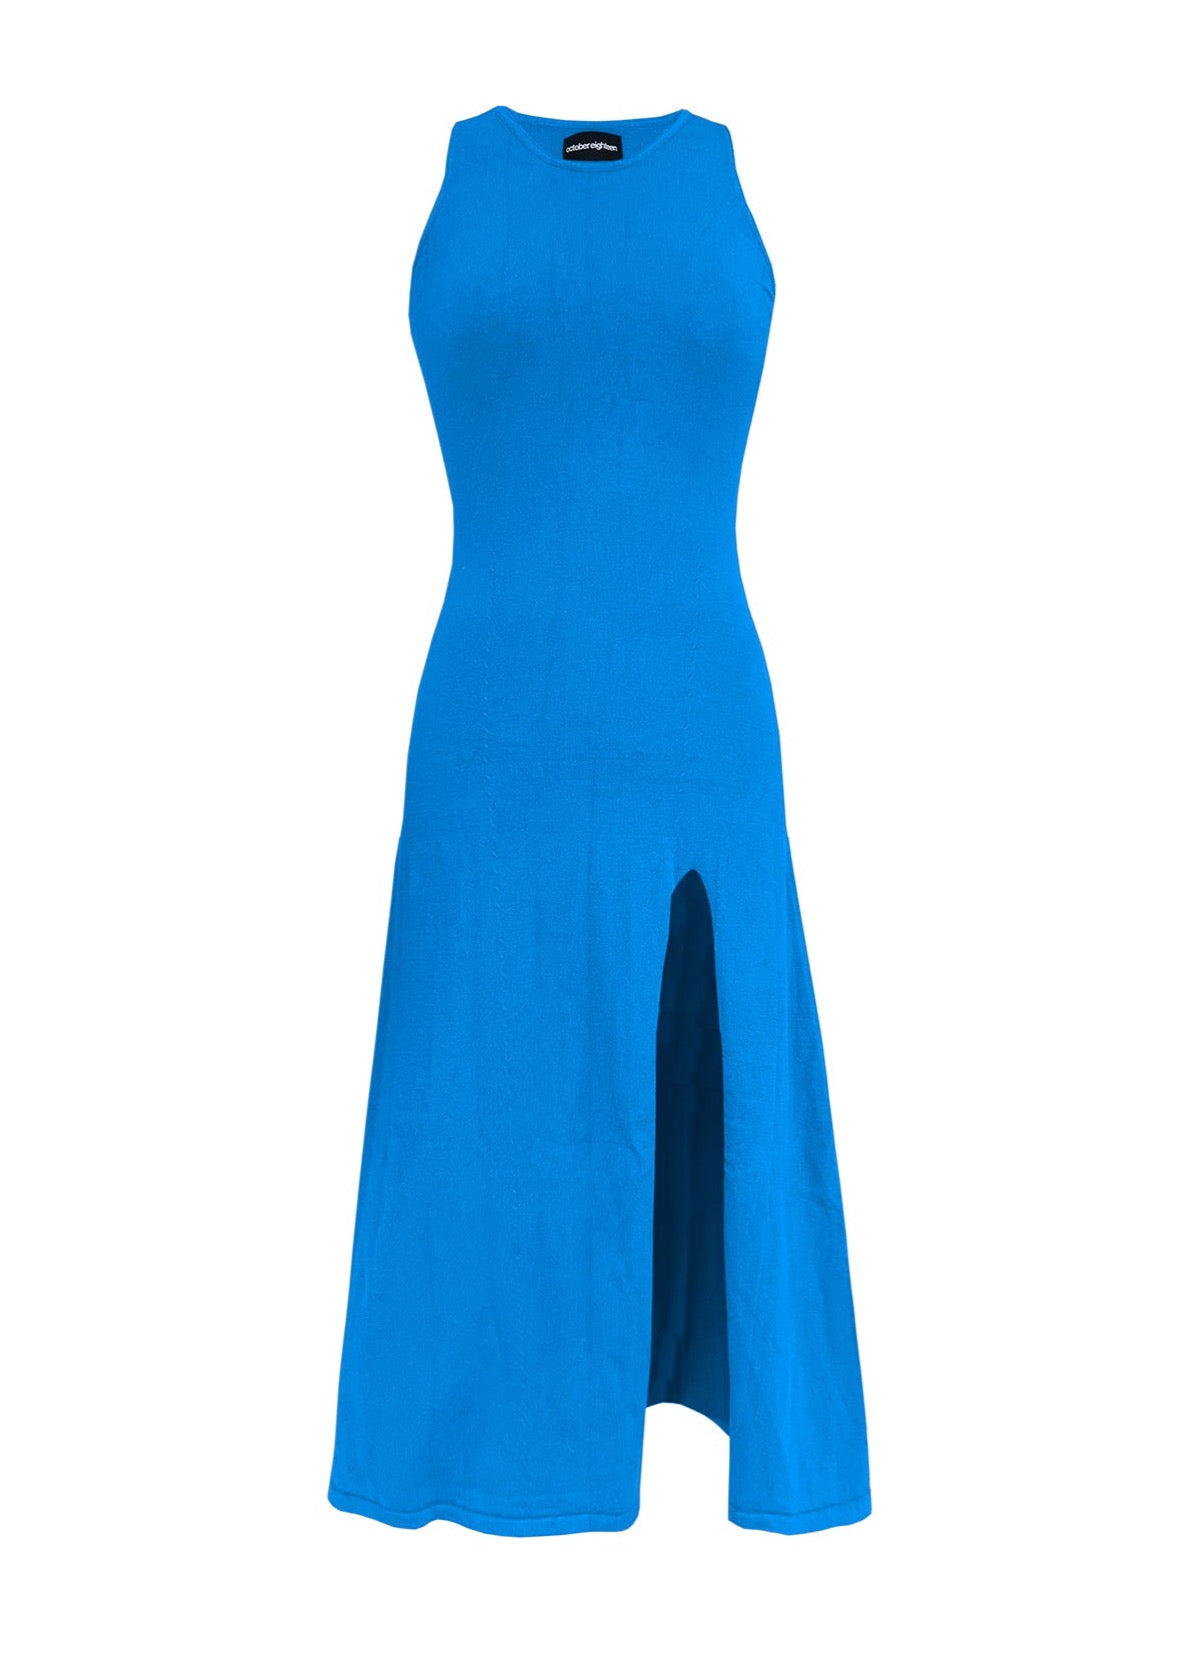 KELLY DRESS in Azure Blue